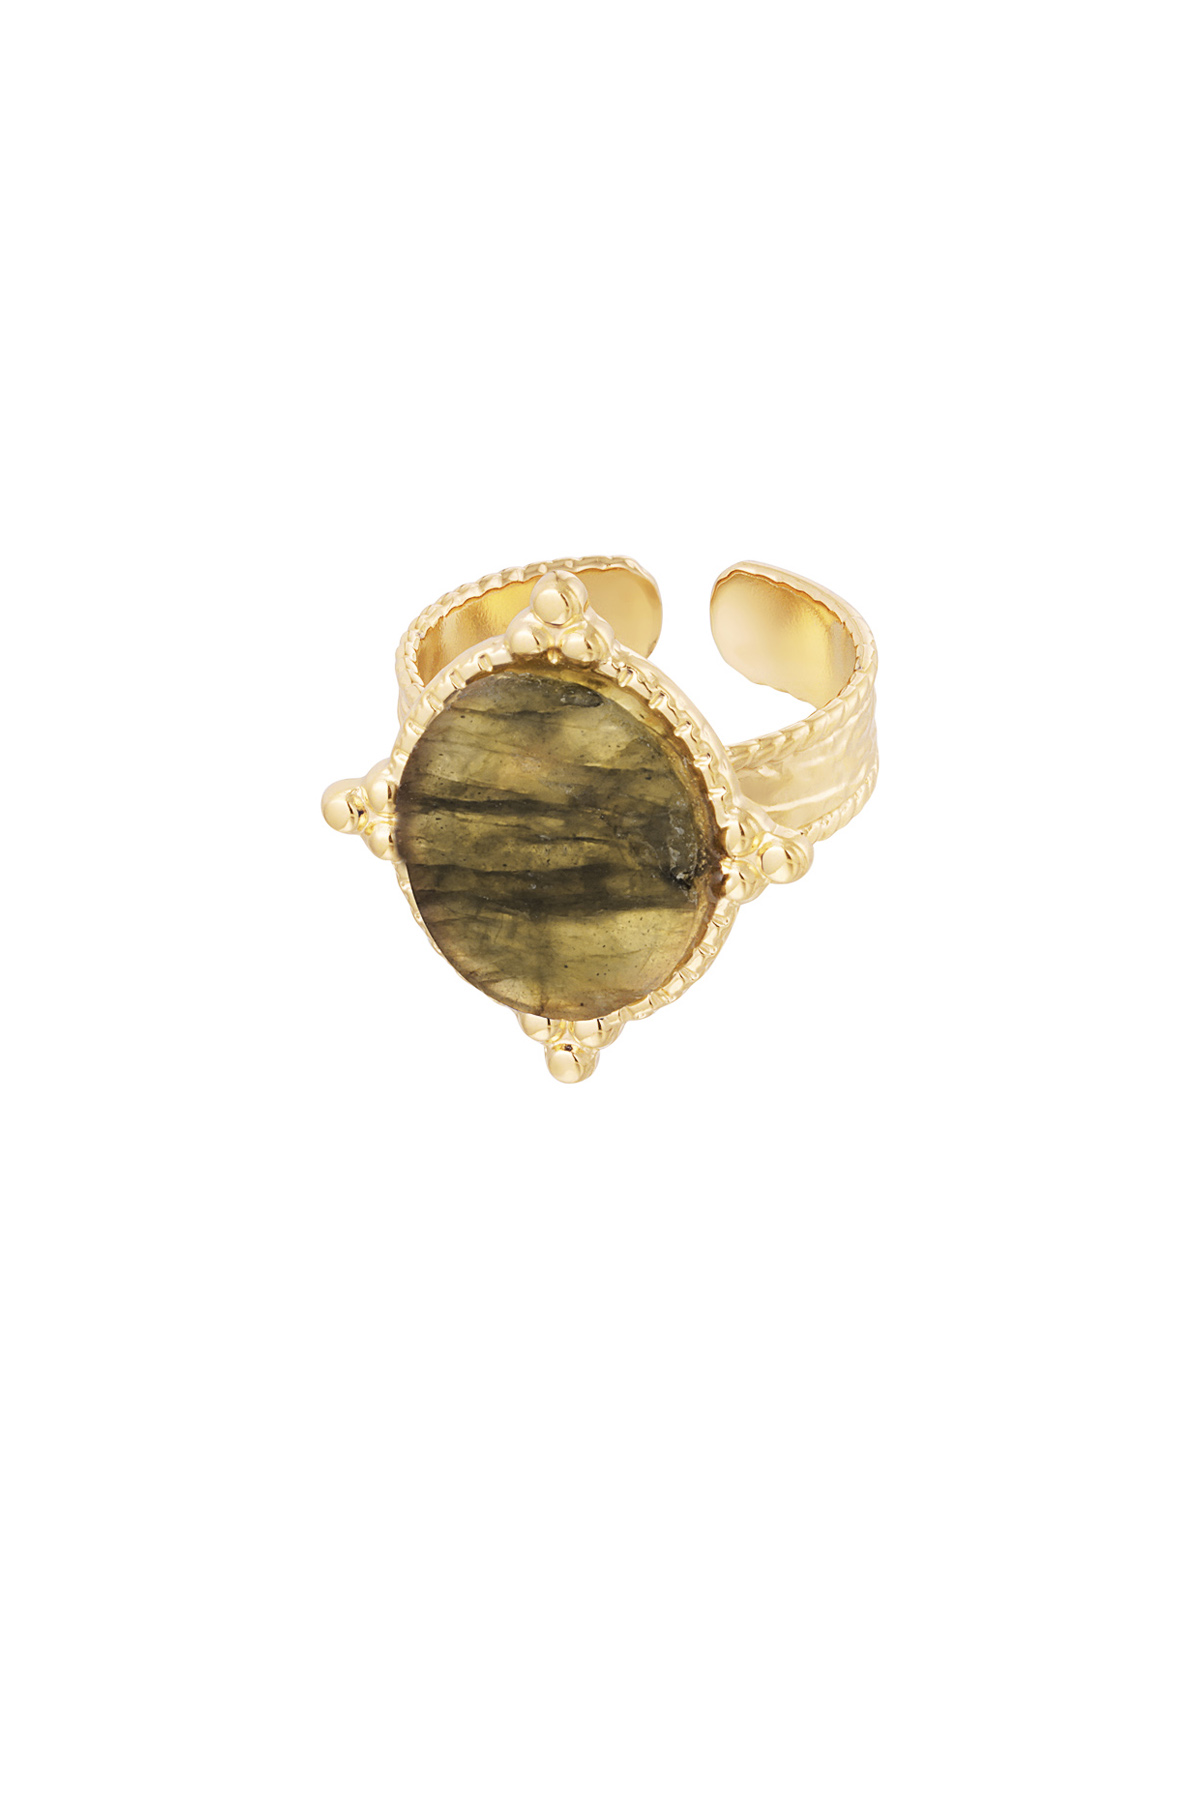 Ring steen met versiersel - goud/olijfgroen